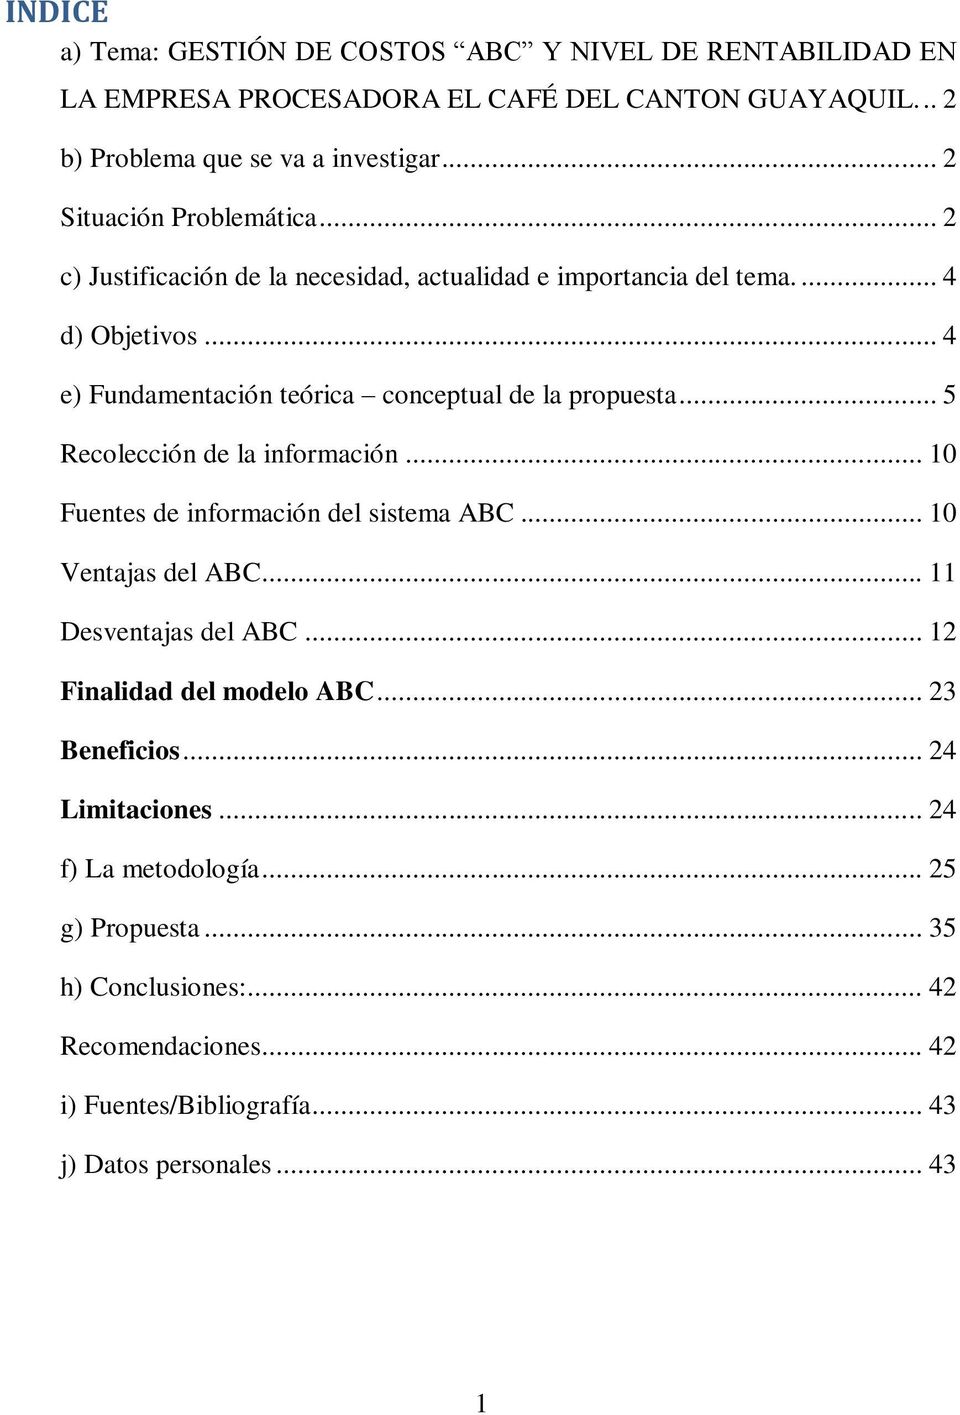 .. 4 e) Fundamentación teórica conceptual de la propuesta... 5 Recolección de la información... 10 Fuentes de información del sistema ABC... 10 Ventajas del ABC.